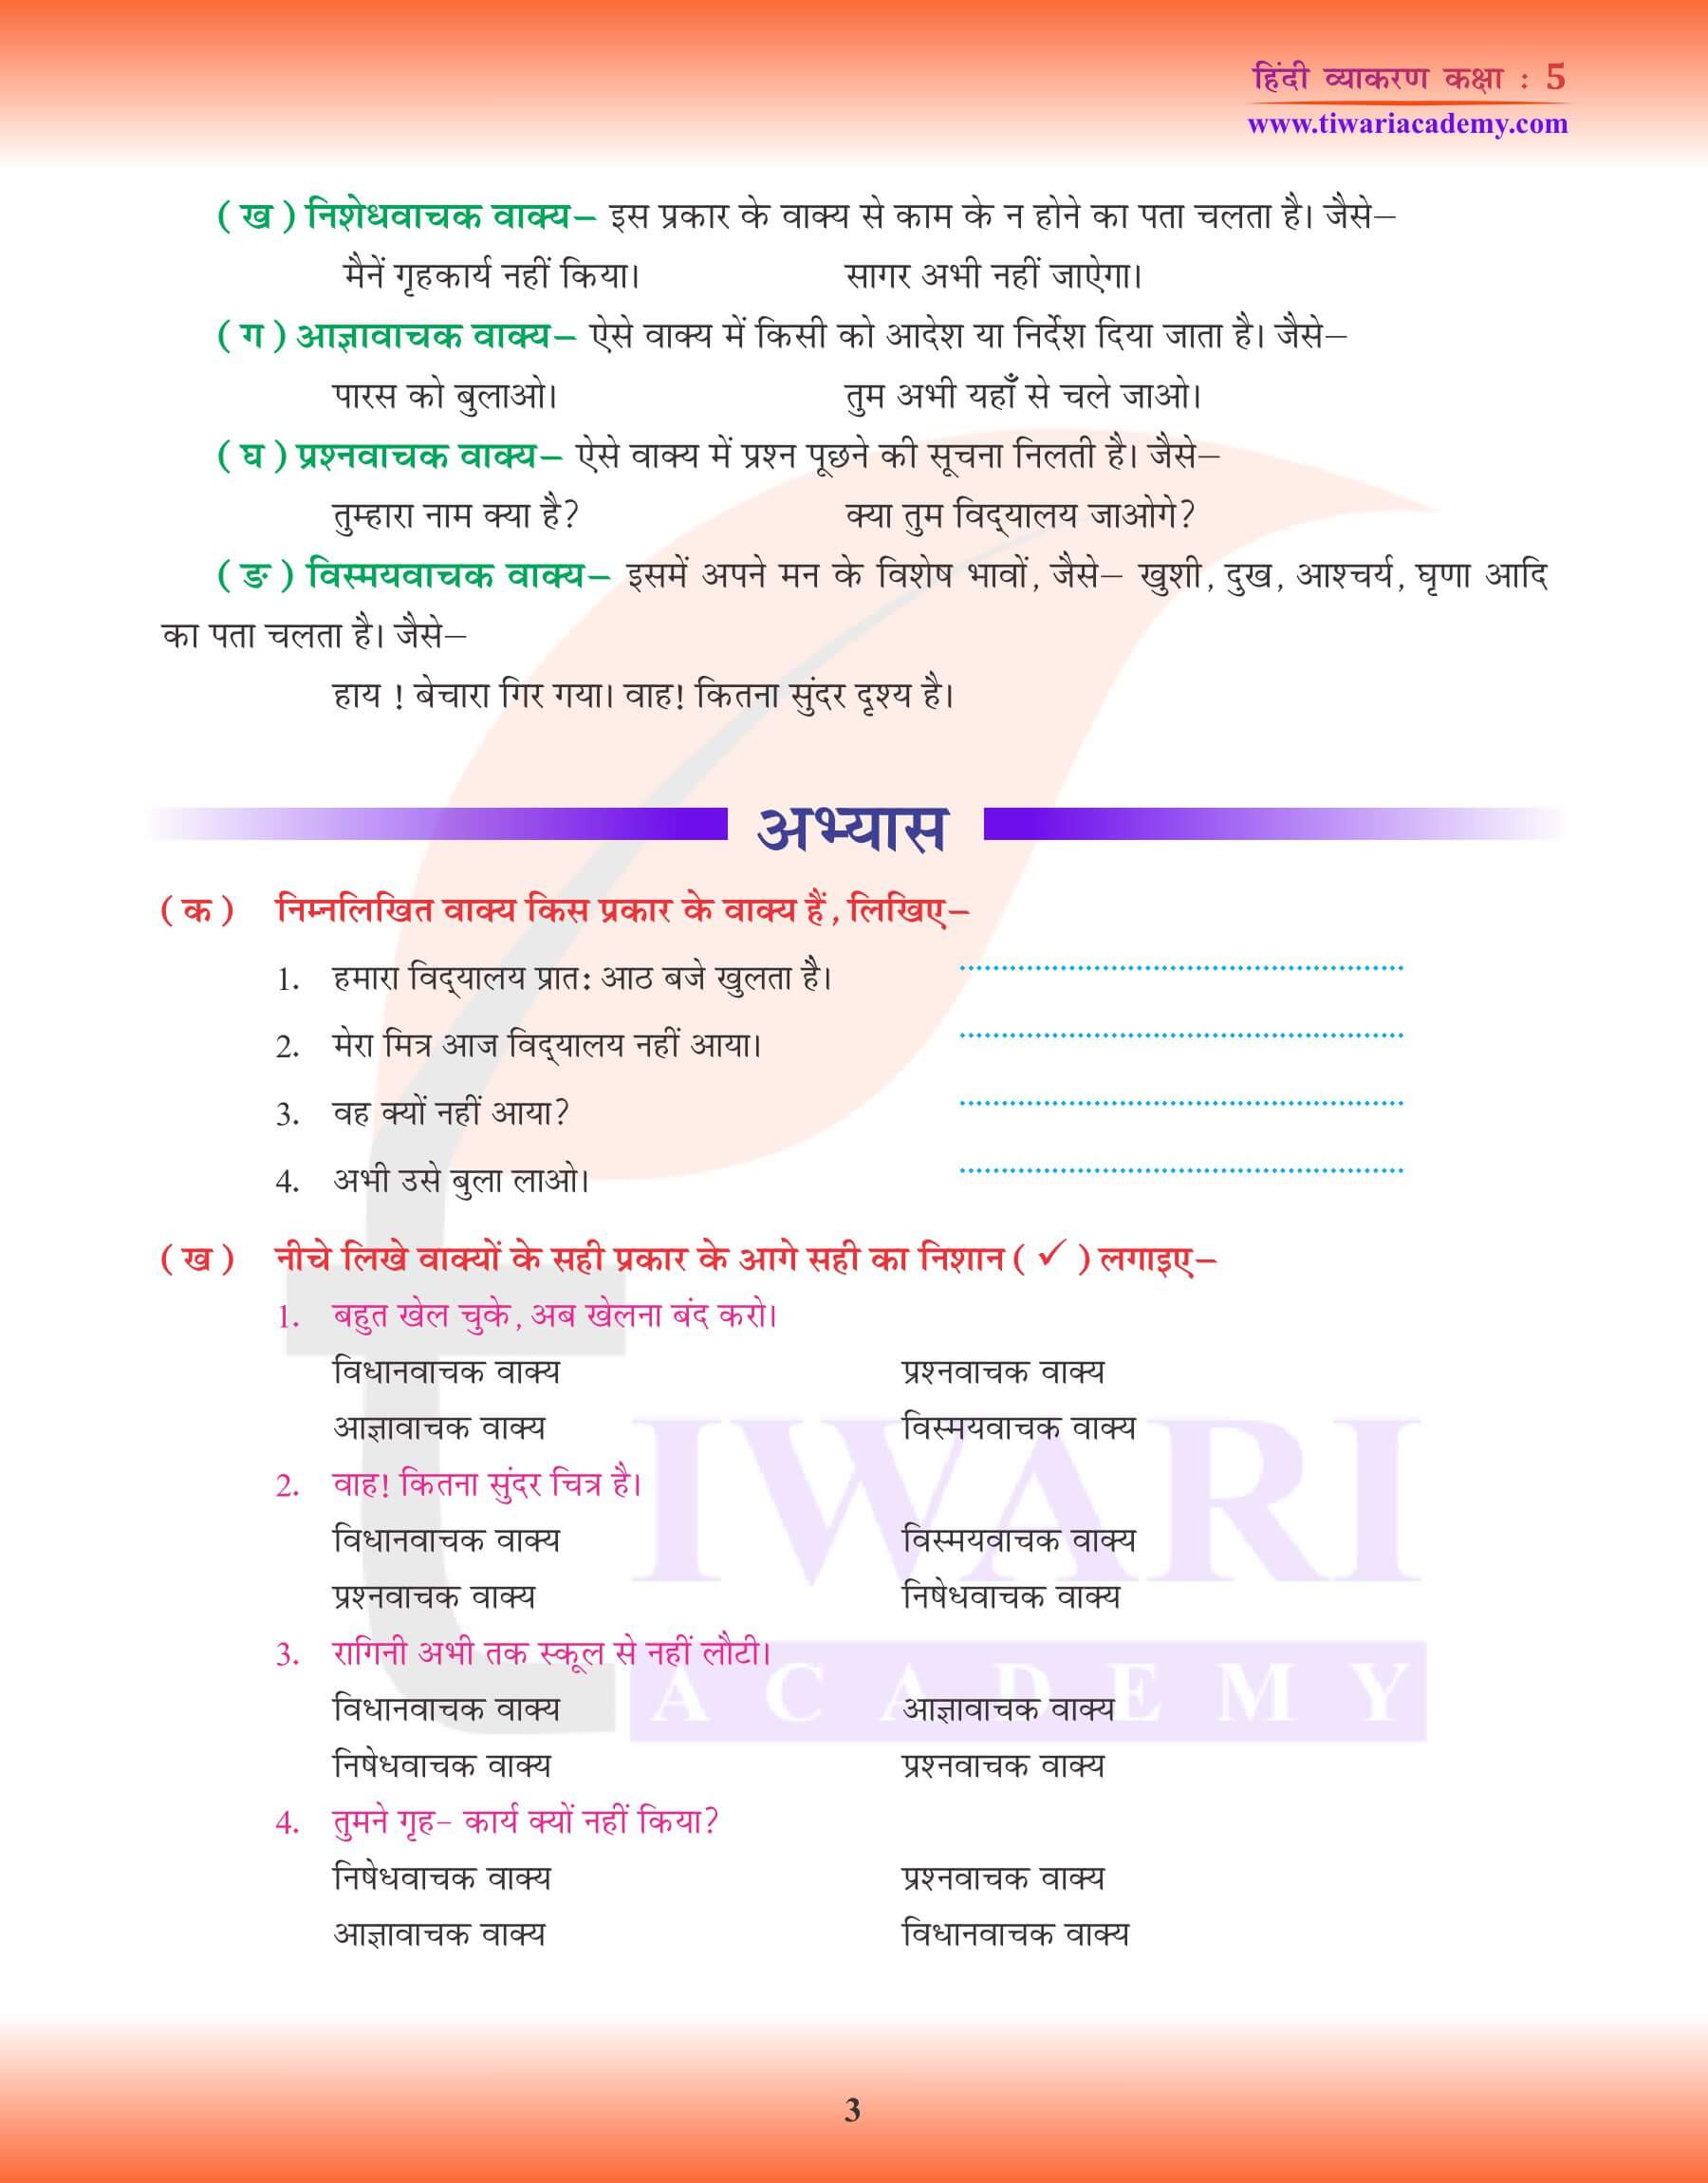 कक्षा 5 हिंदी व्याकरण में वाक्य के लिए अभ्यास